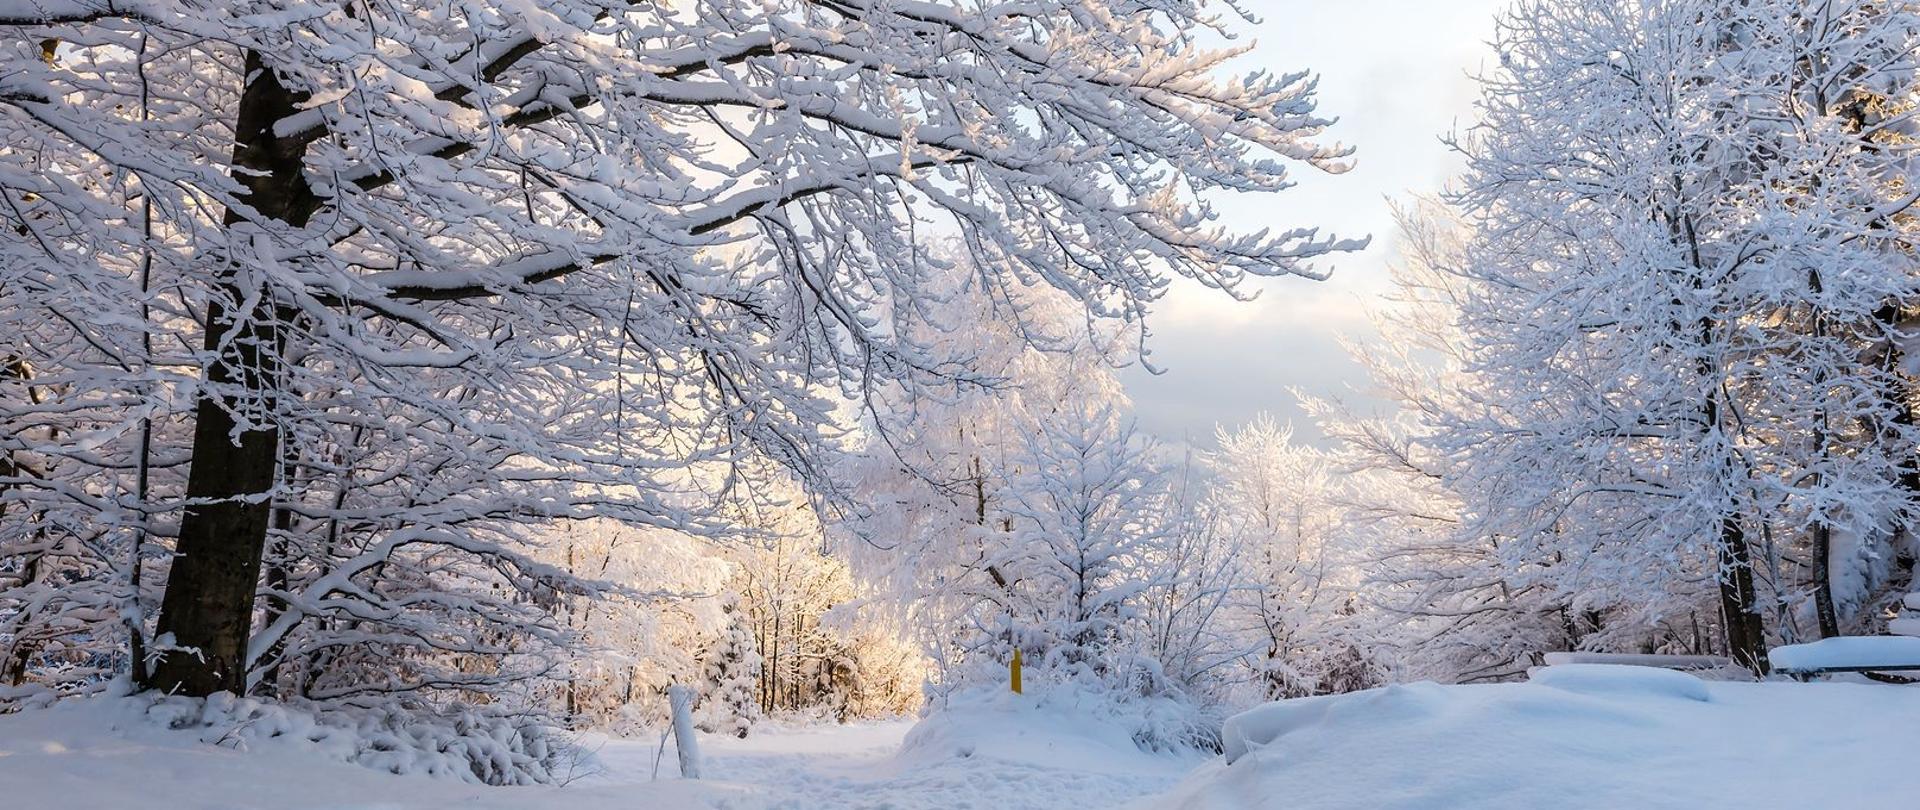 Drzewa i ziemia pokryte śniegiem